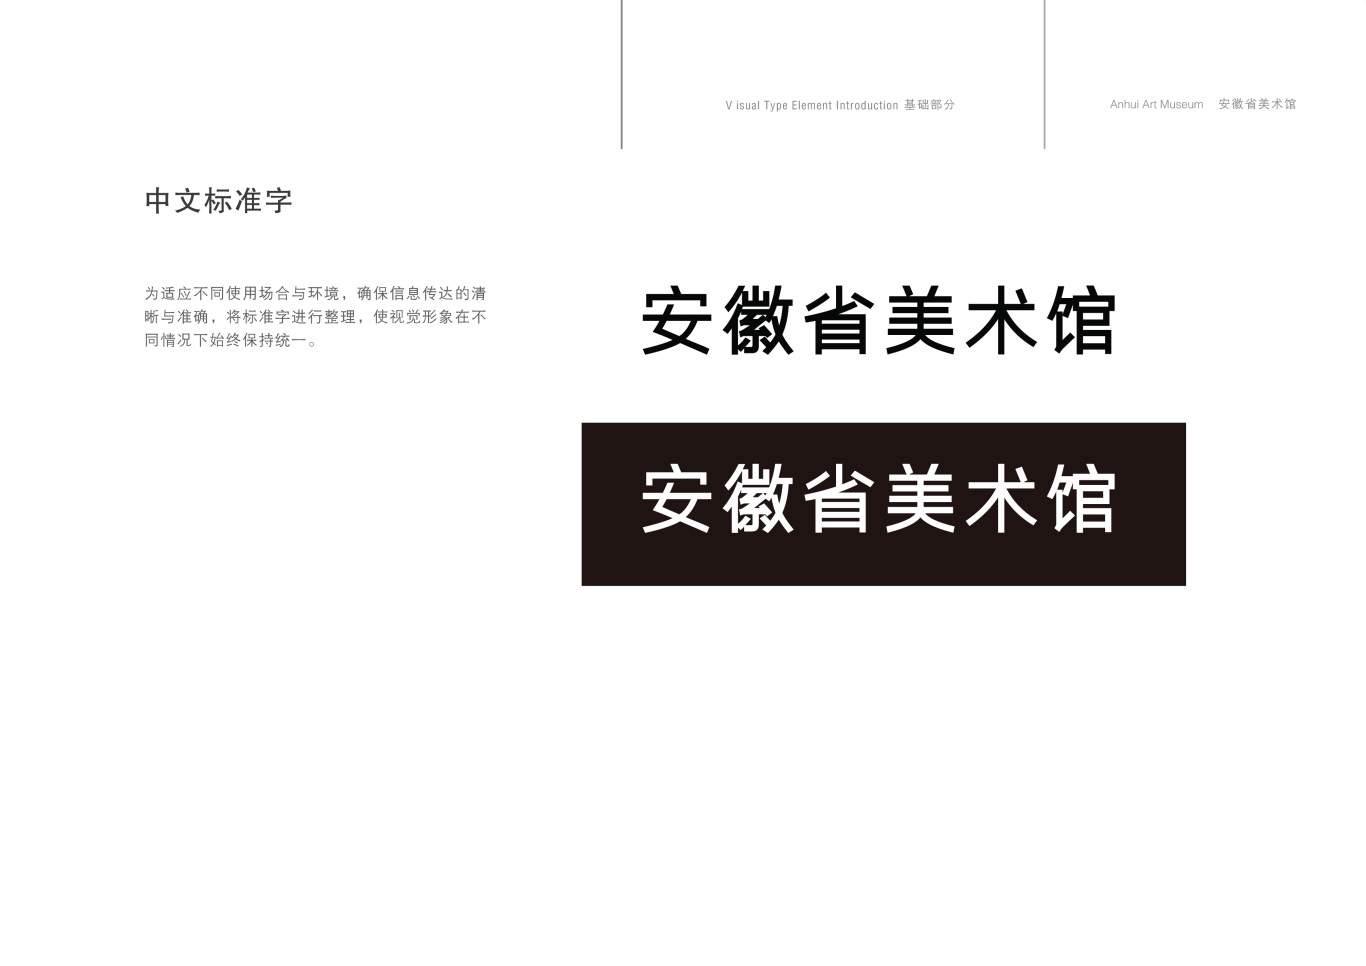 安徽省美术馆标志设计图5